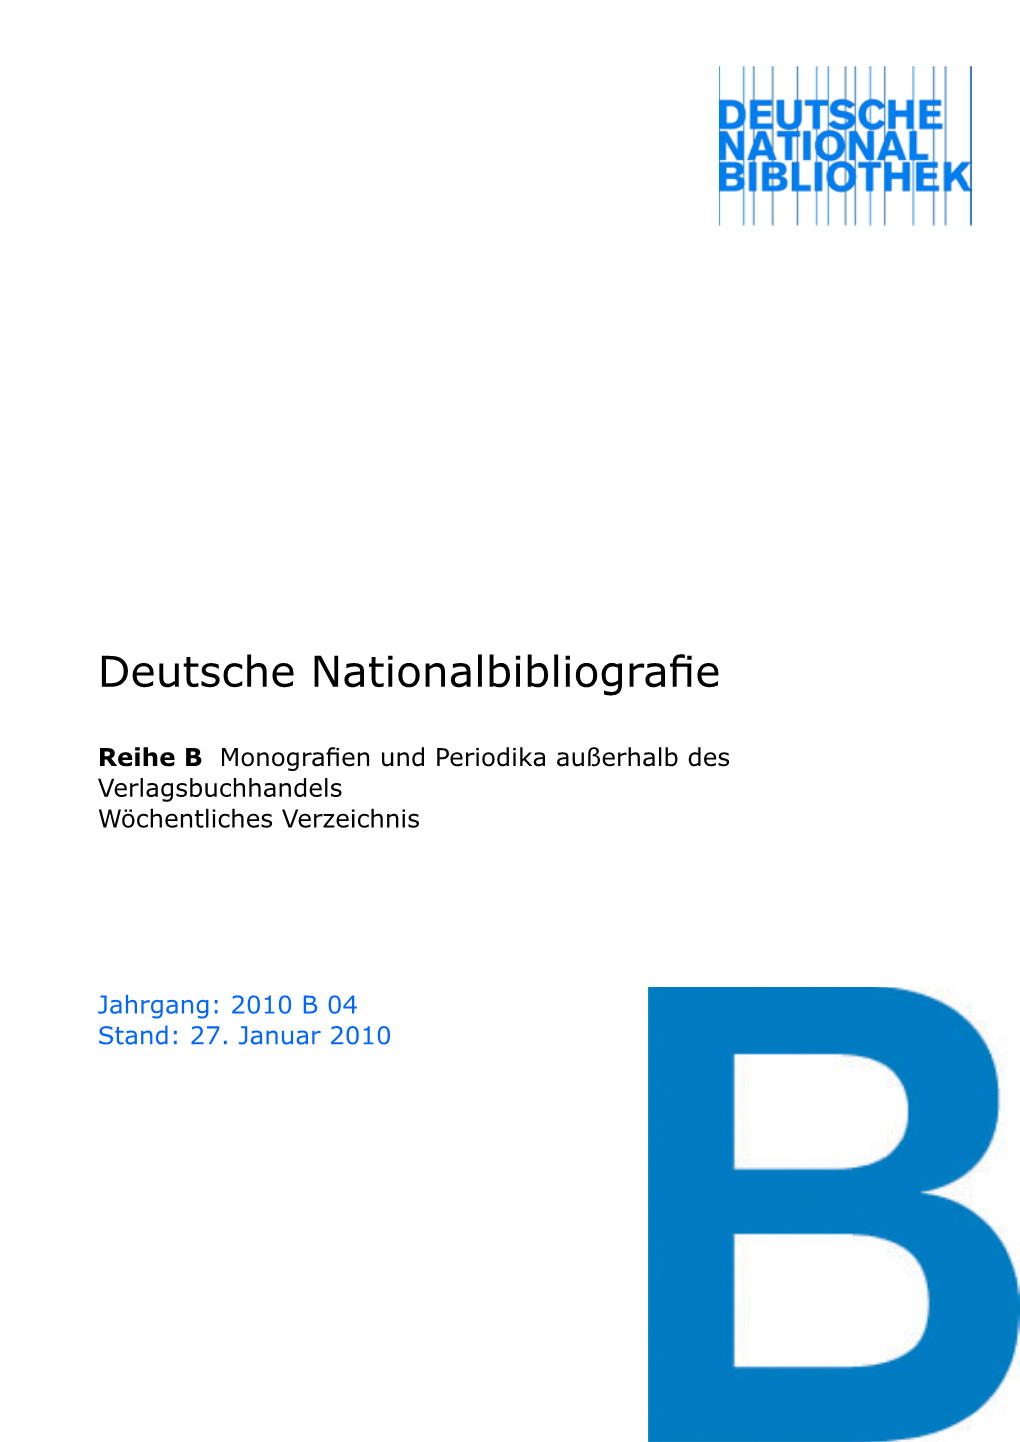 Deutsche Nationalbibliografie 2010 B 04